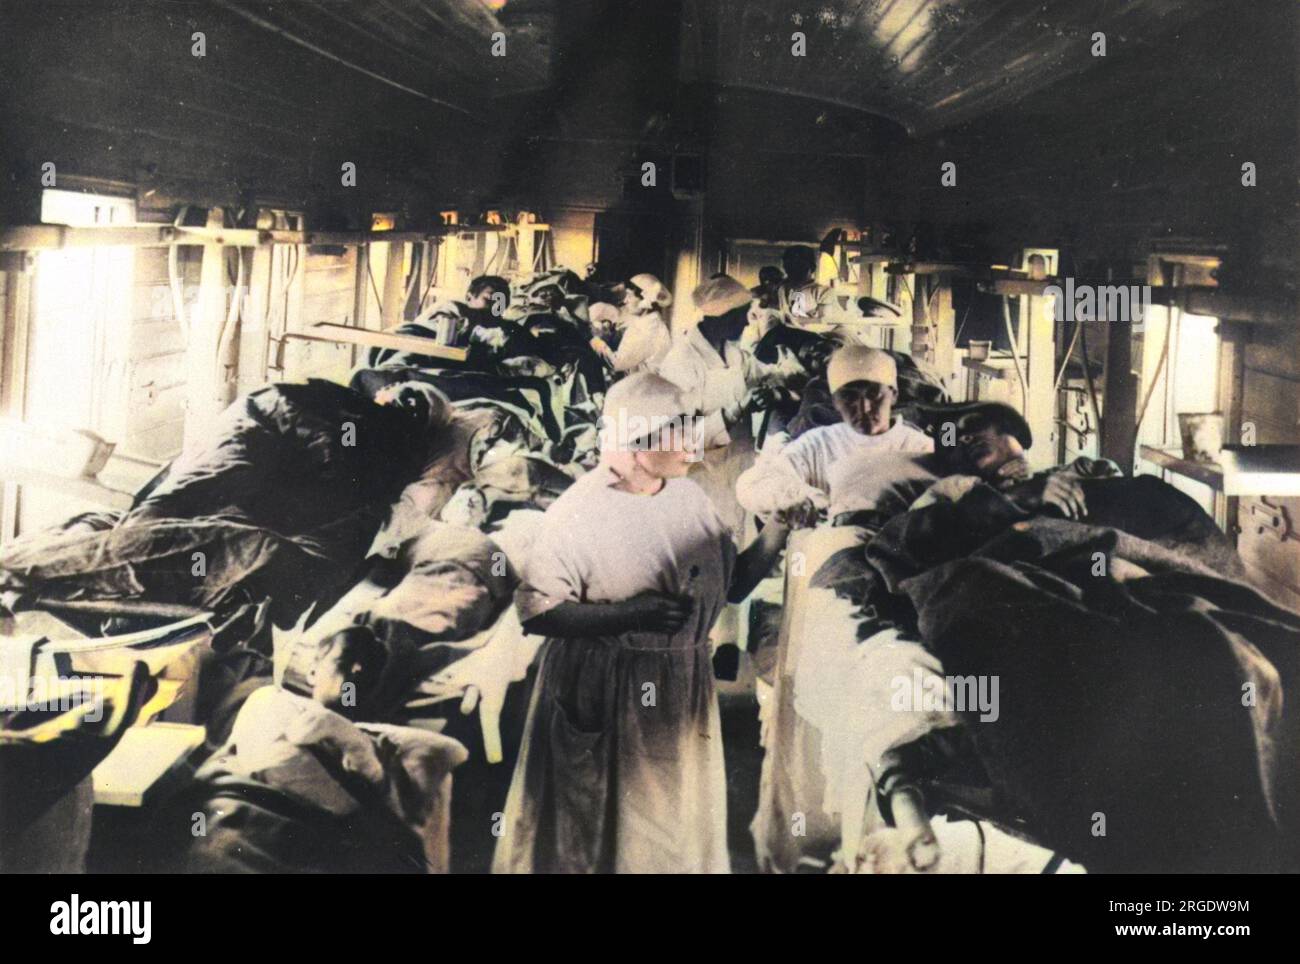 Un treno russo utilizzato come ospedale temporaneo specializzato nel trattamento di pazienti affetti da febbre tifoide. Foto Stock